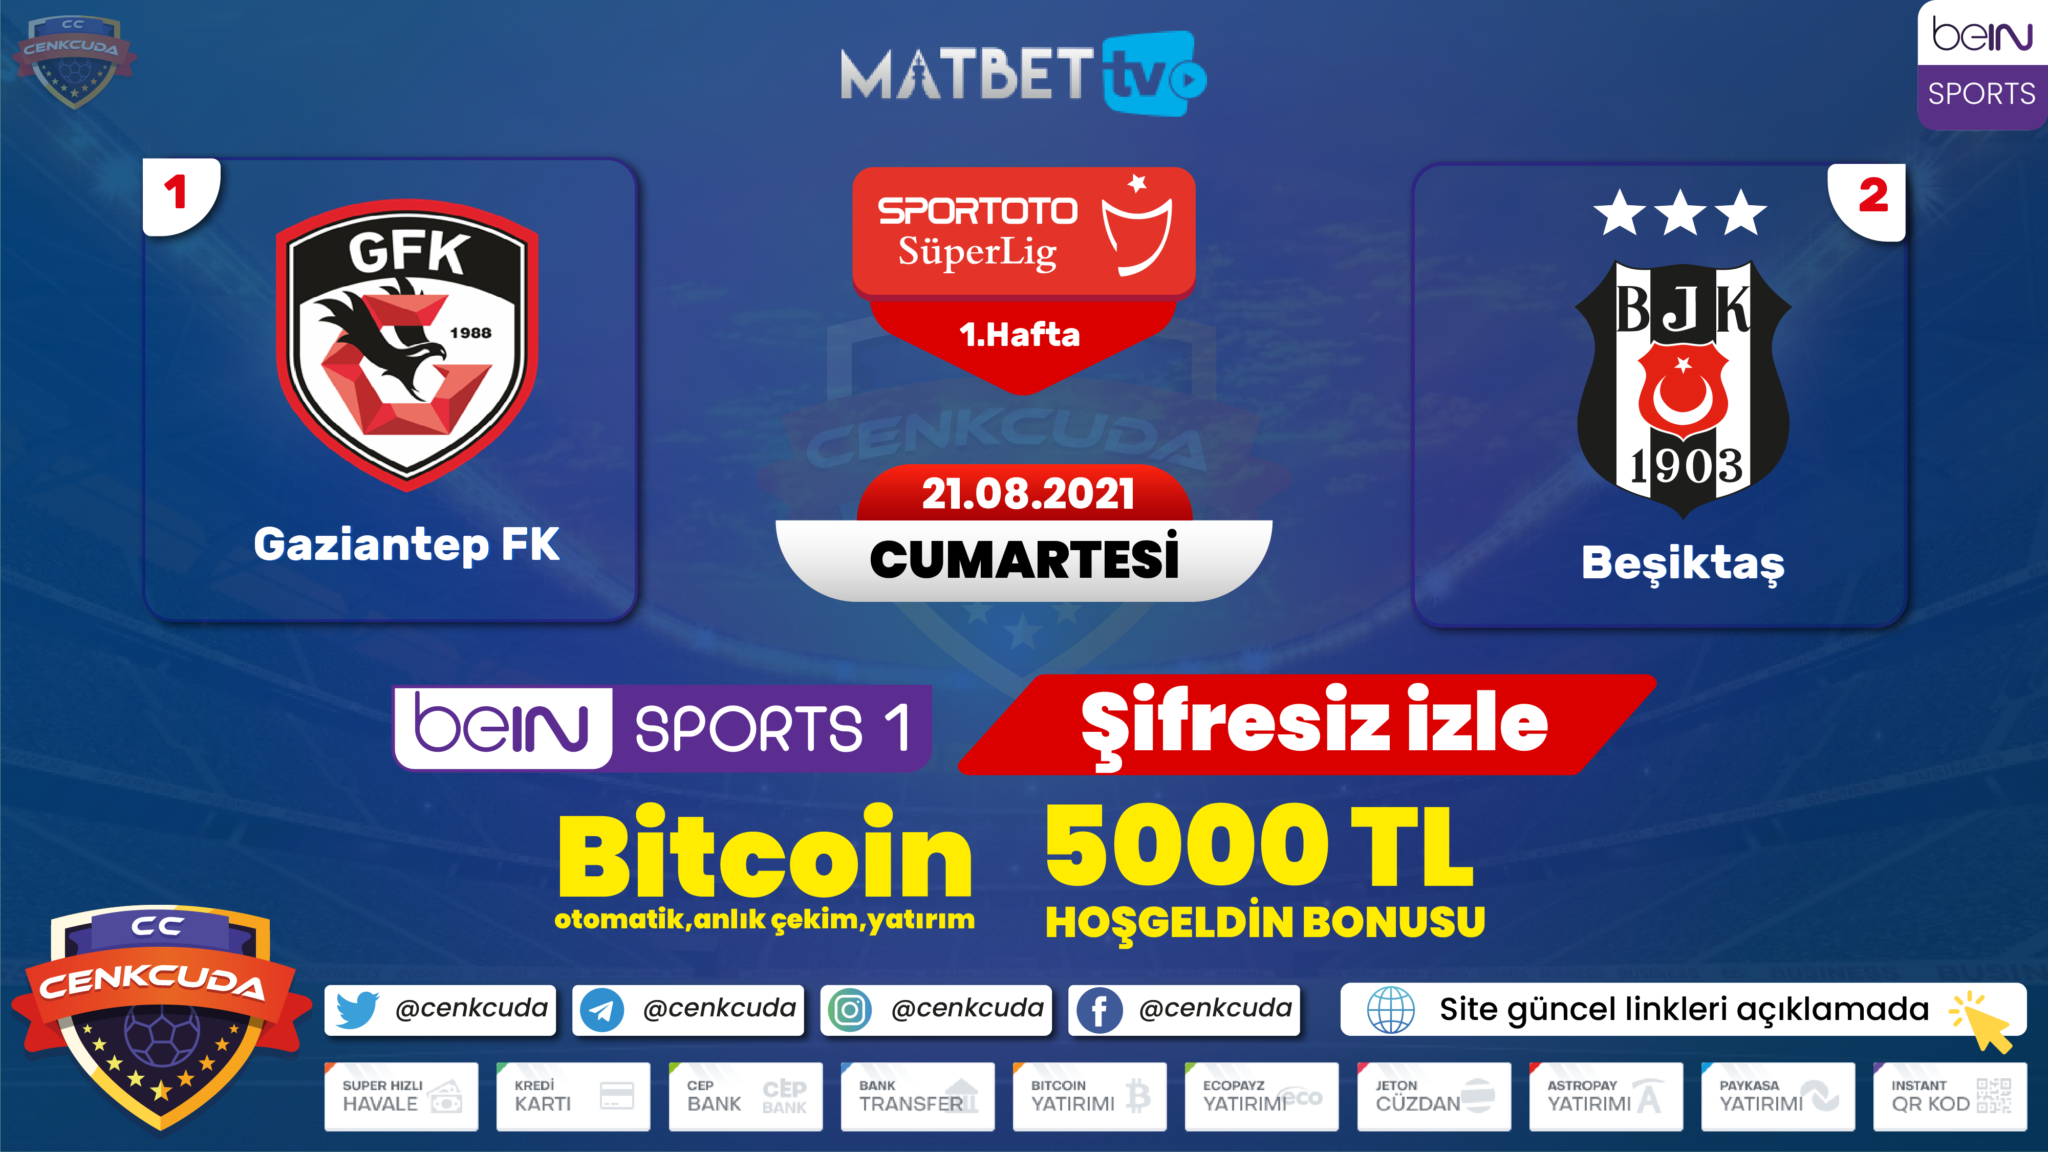 Canlı maç izle: Matbet TV, Maç Yayınları, KralBozguncu